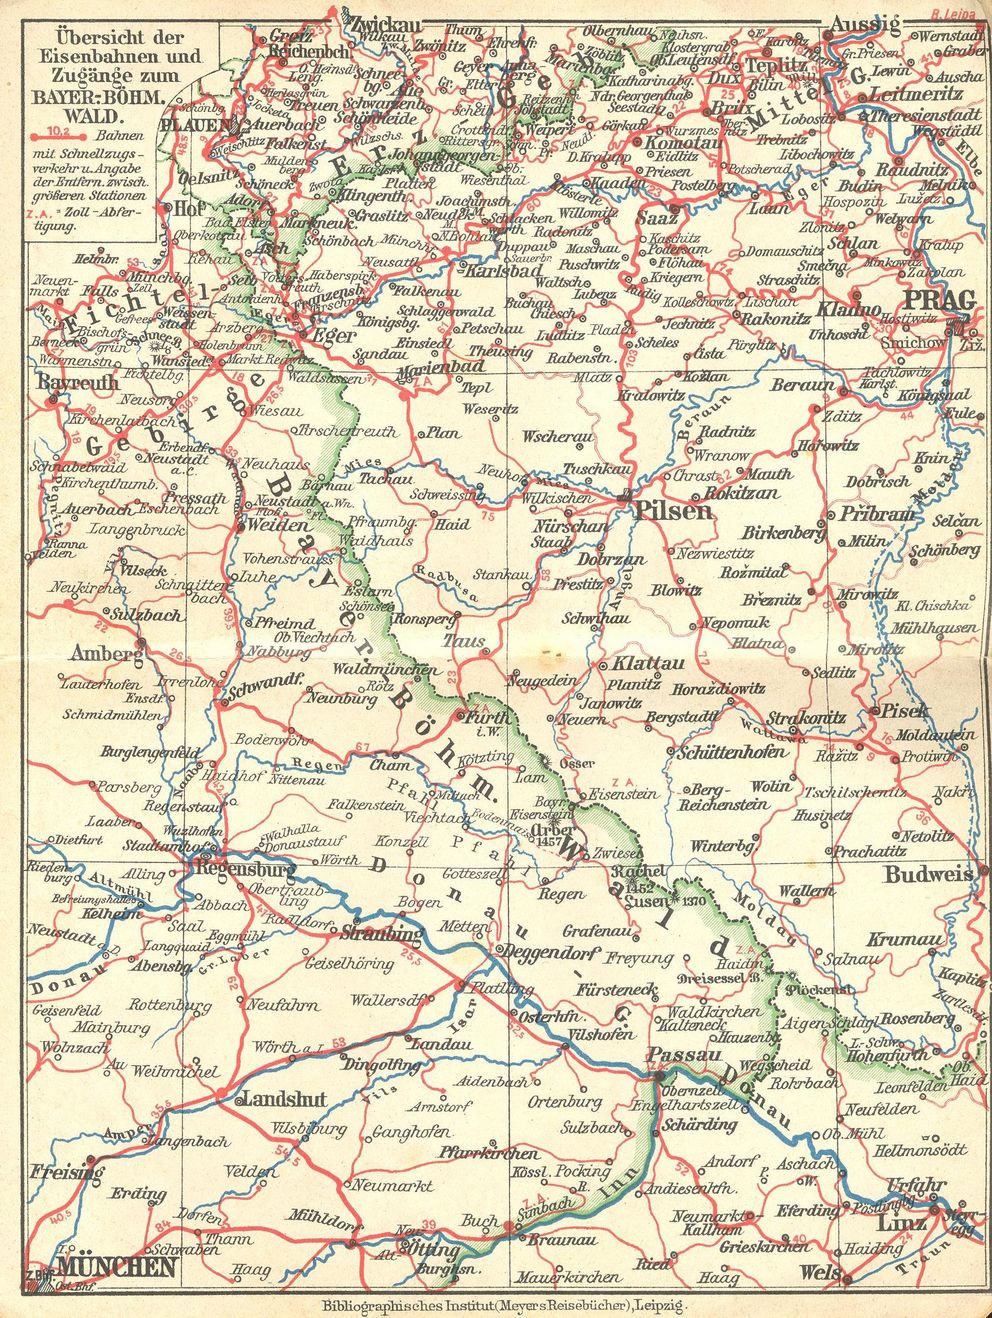 Übersicht der Eisenbahnen und Zugänge zum Bayerisch-Böhmischen Wald 1922